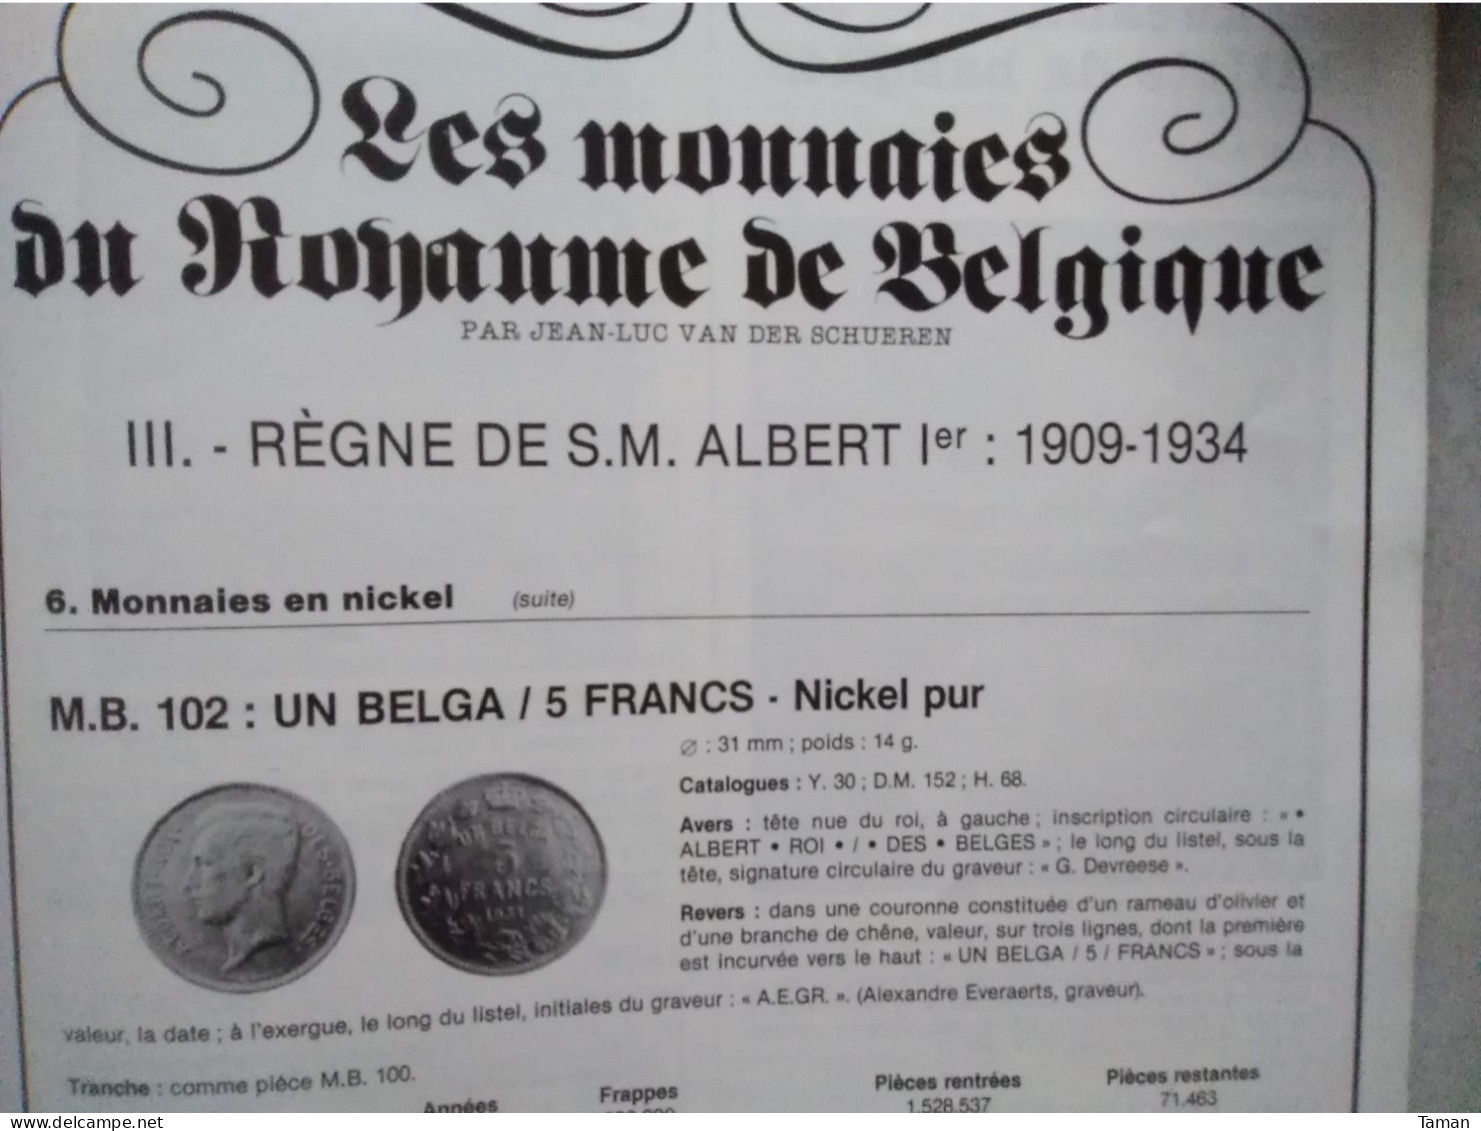 Numismatique & change - Napoléonides Italie - Circulation du billon en France - Grèce antique - Royales - Belgique